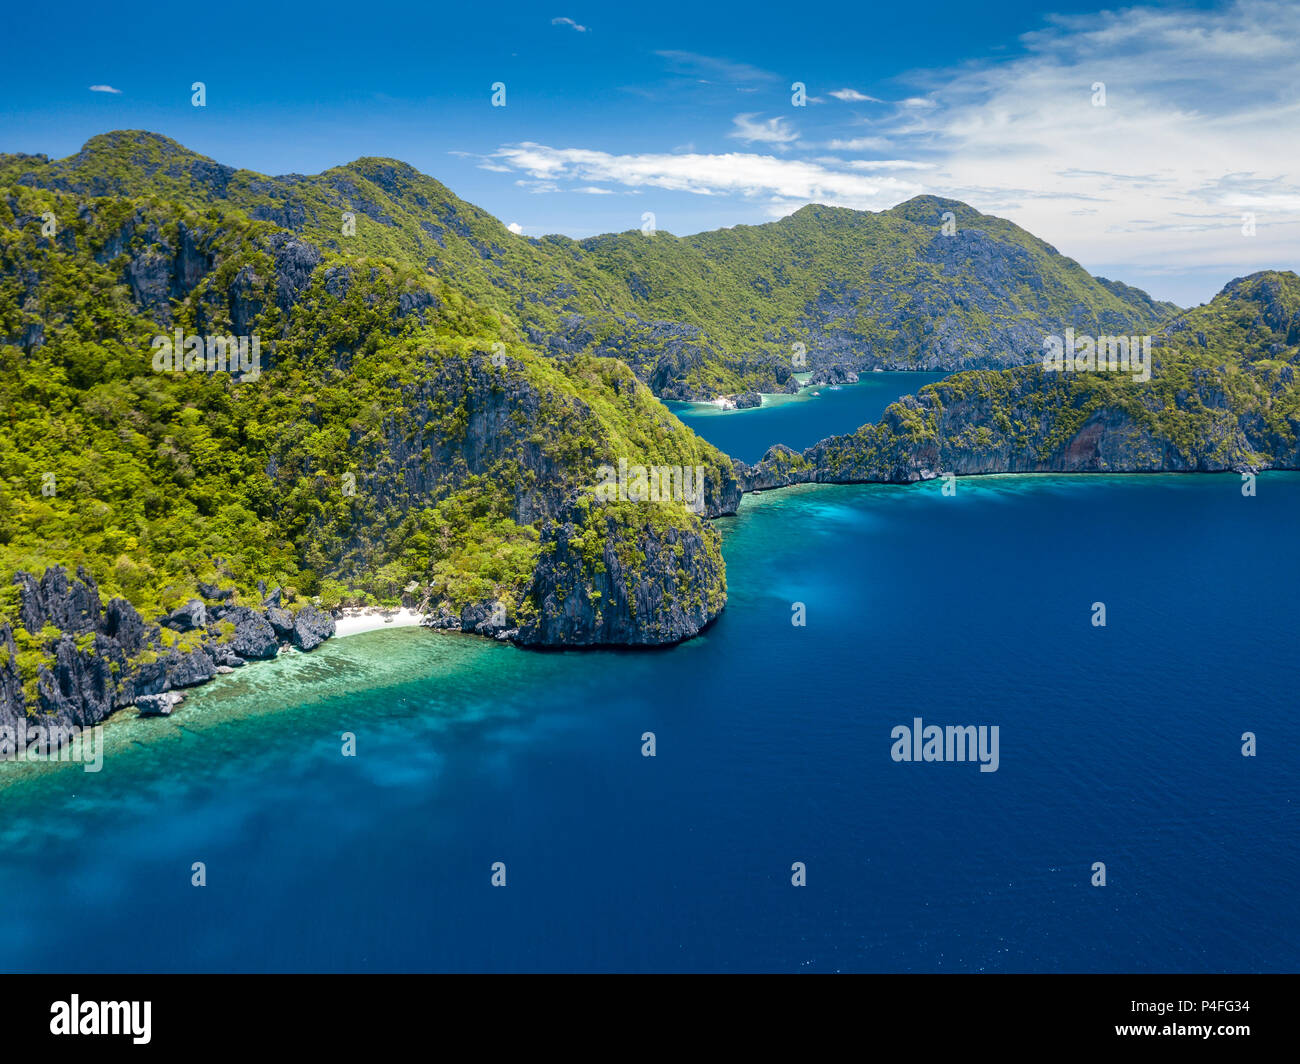 Drone aérien vue de falaises calcaires spectaculaires, jungle, plages de sable entourée de récifs de corail Banque D'Images